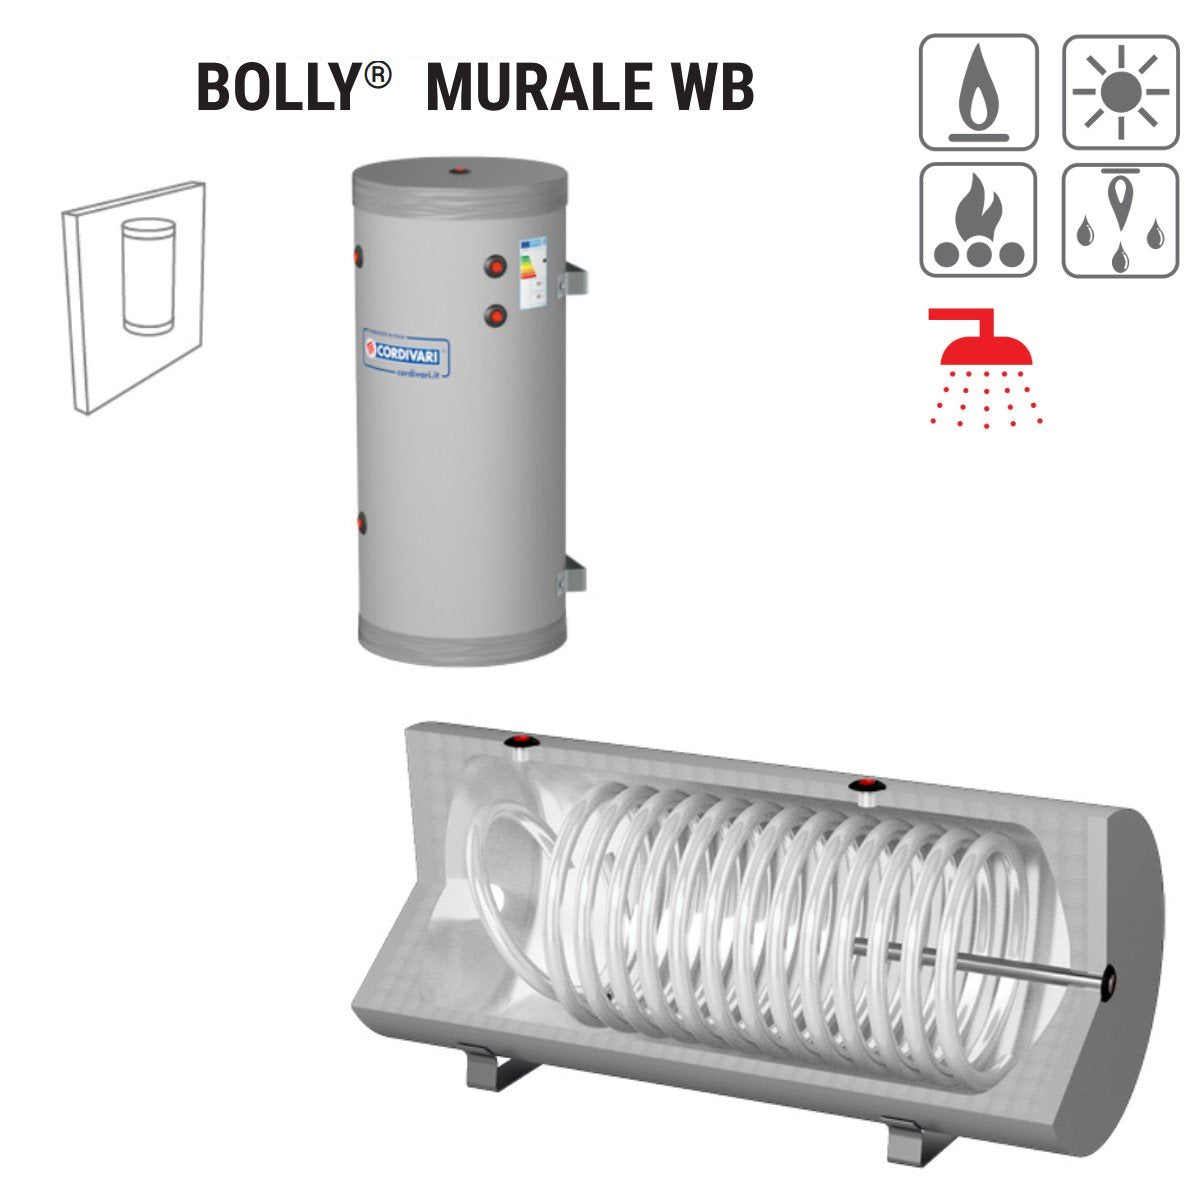 immagine-2-cordivari-bollitore-polywarm-cordivari-modello-bolly-murale-wb-300-per-produzione-di-a-c-s-con-1-scambiatore-fisso